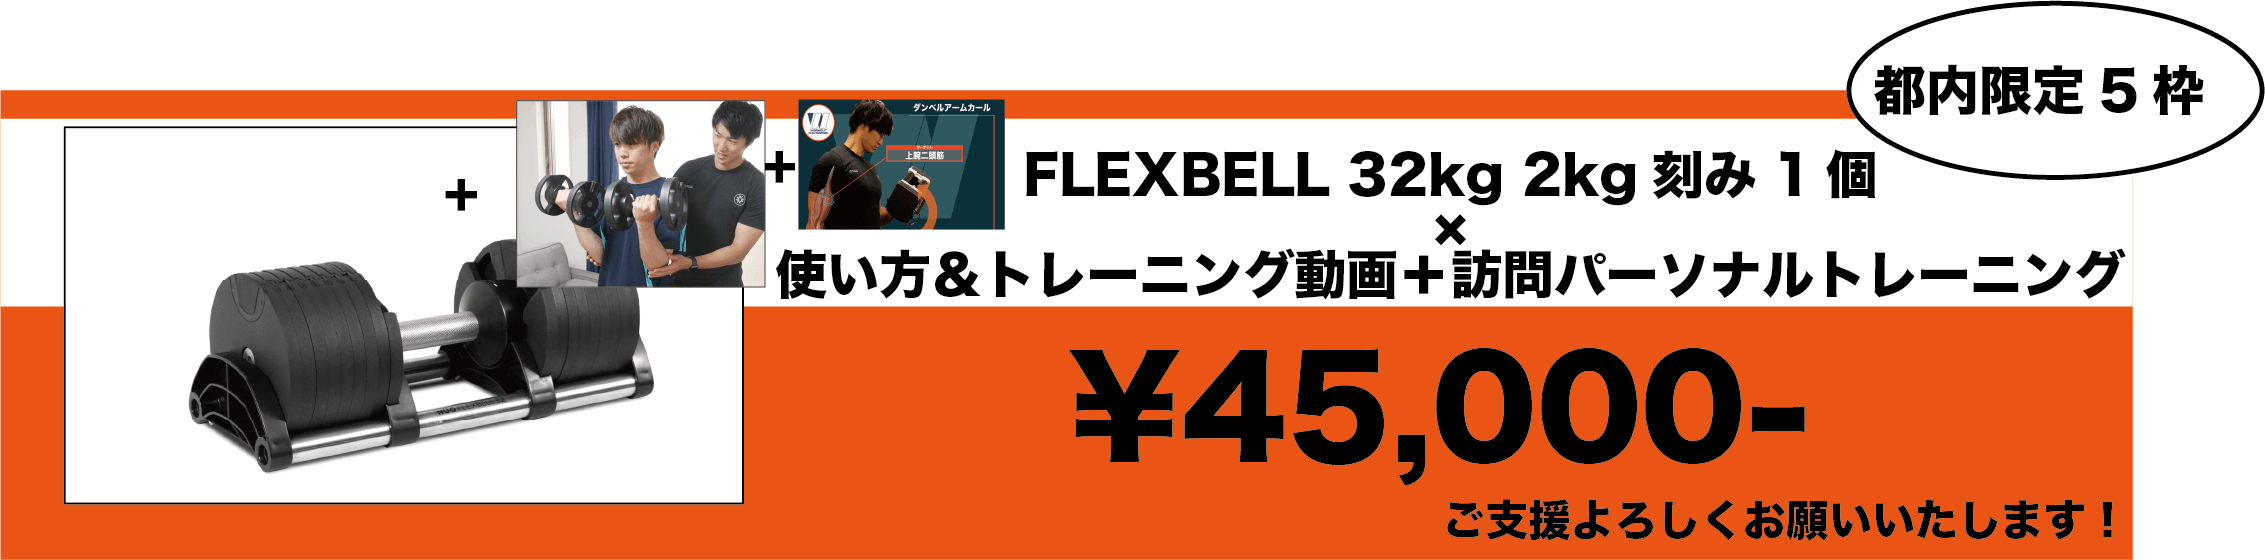 ②FLEXBELL 32kg